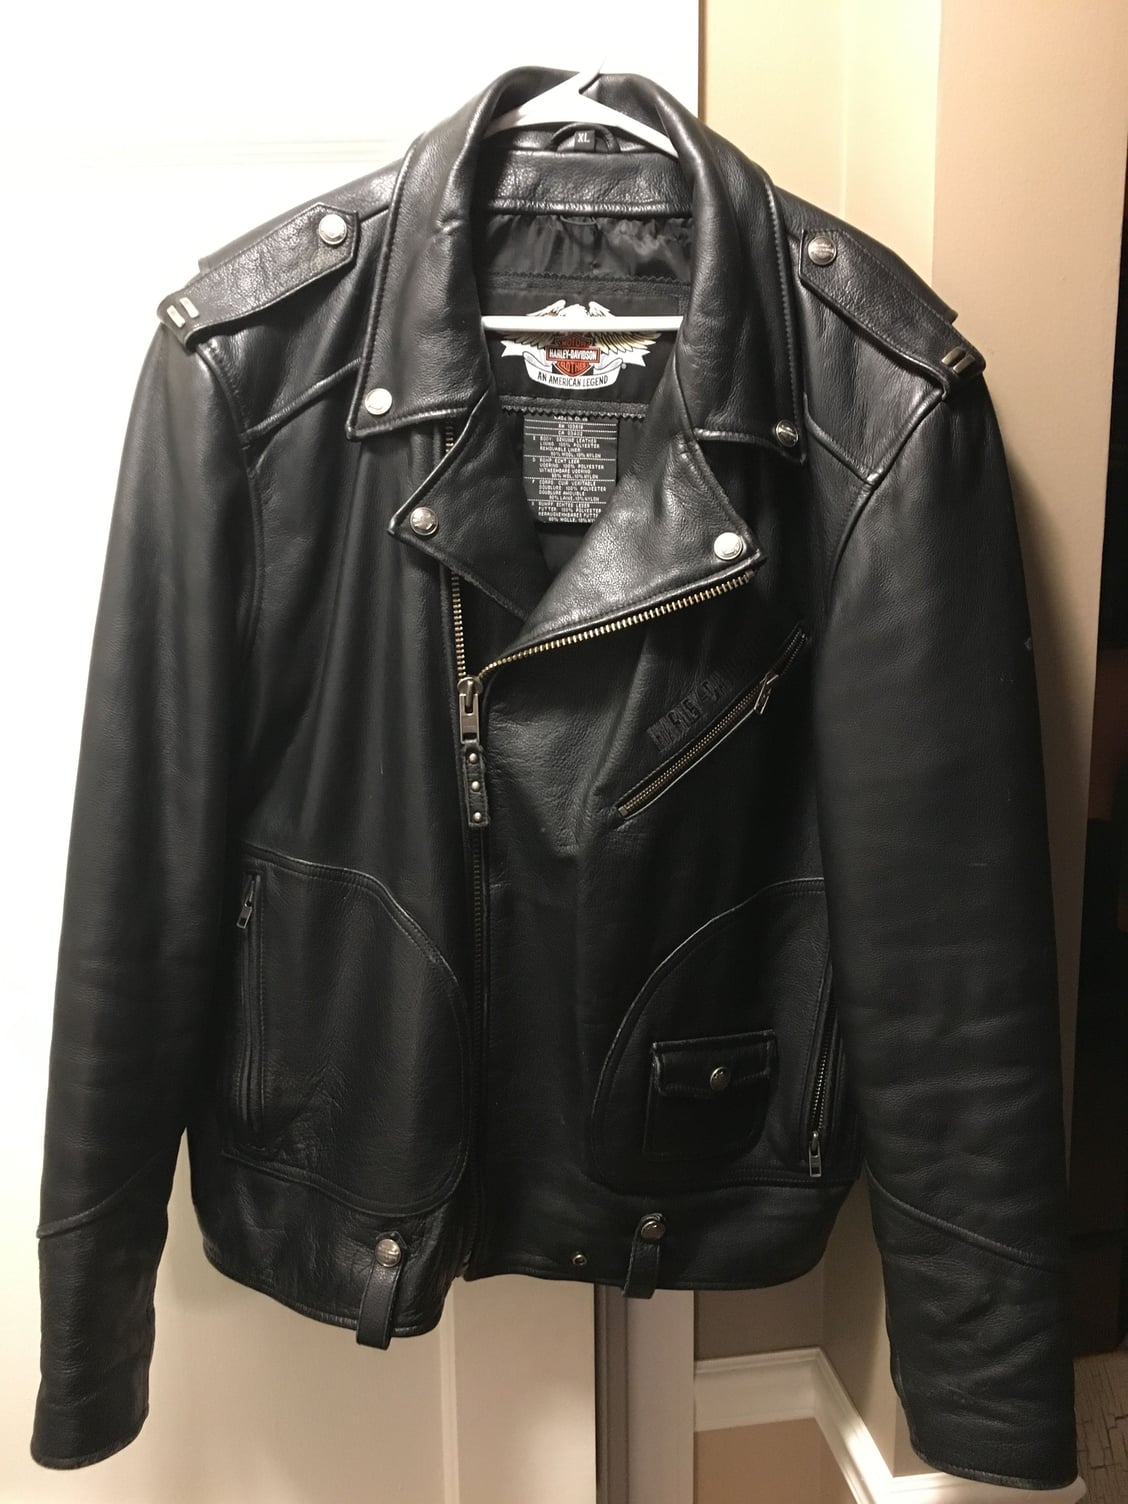 XL Leather Harley Coat - Harley Davidson Forums